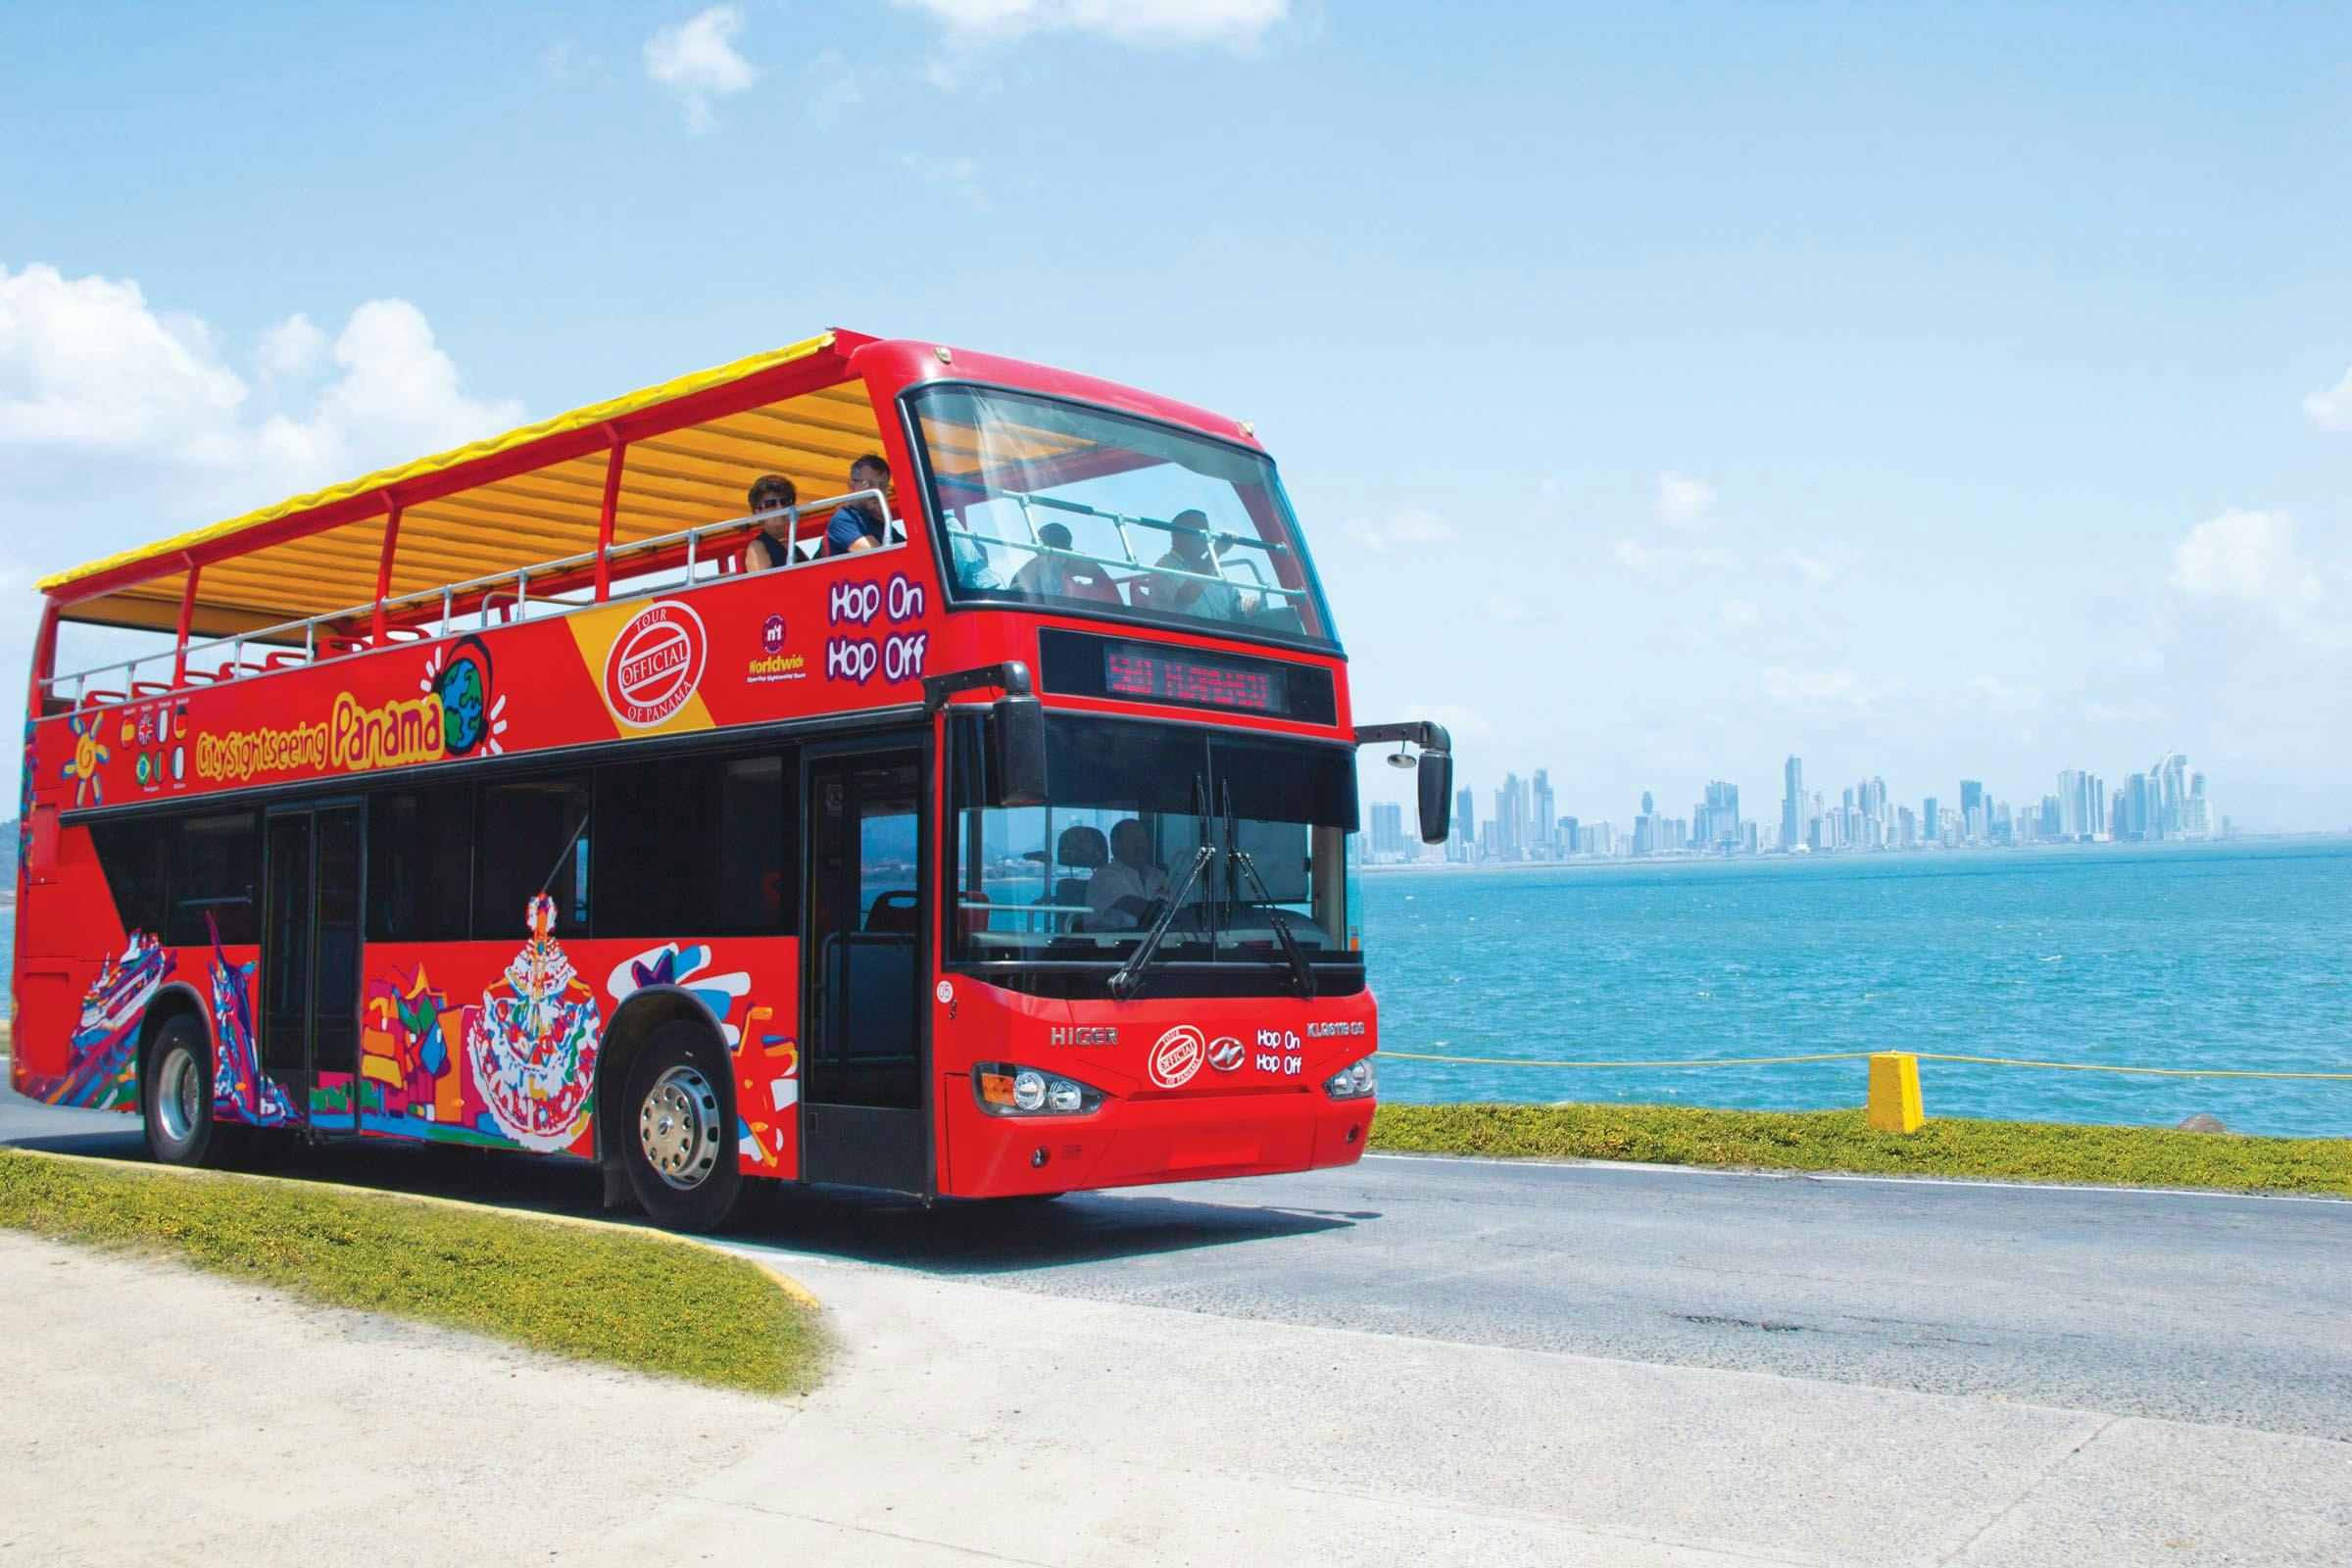 Wycieczka autobusowa typu hop-on hop-off po Panamie